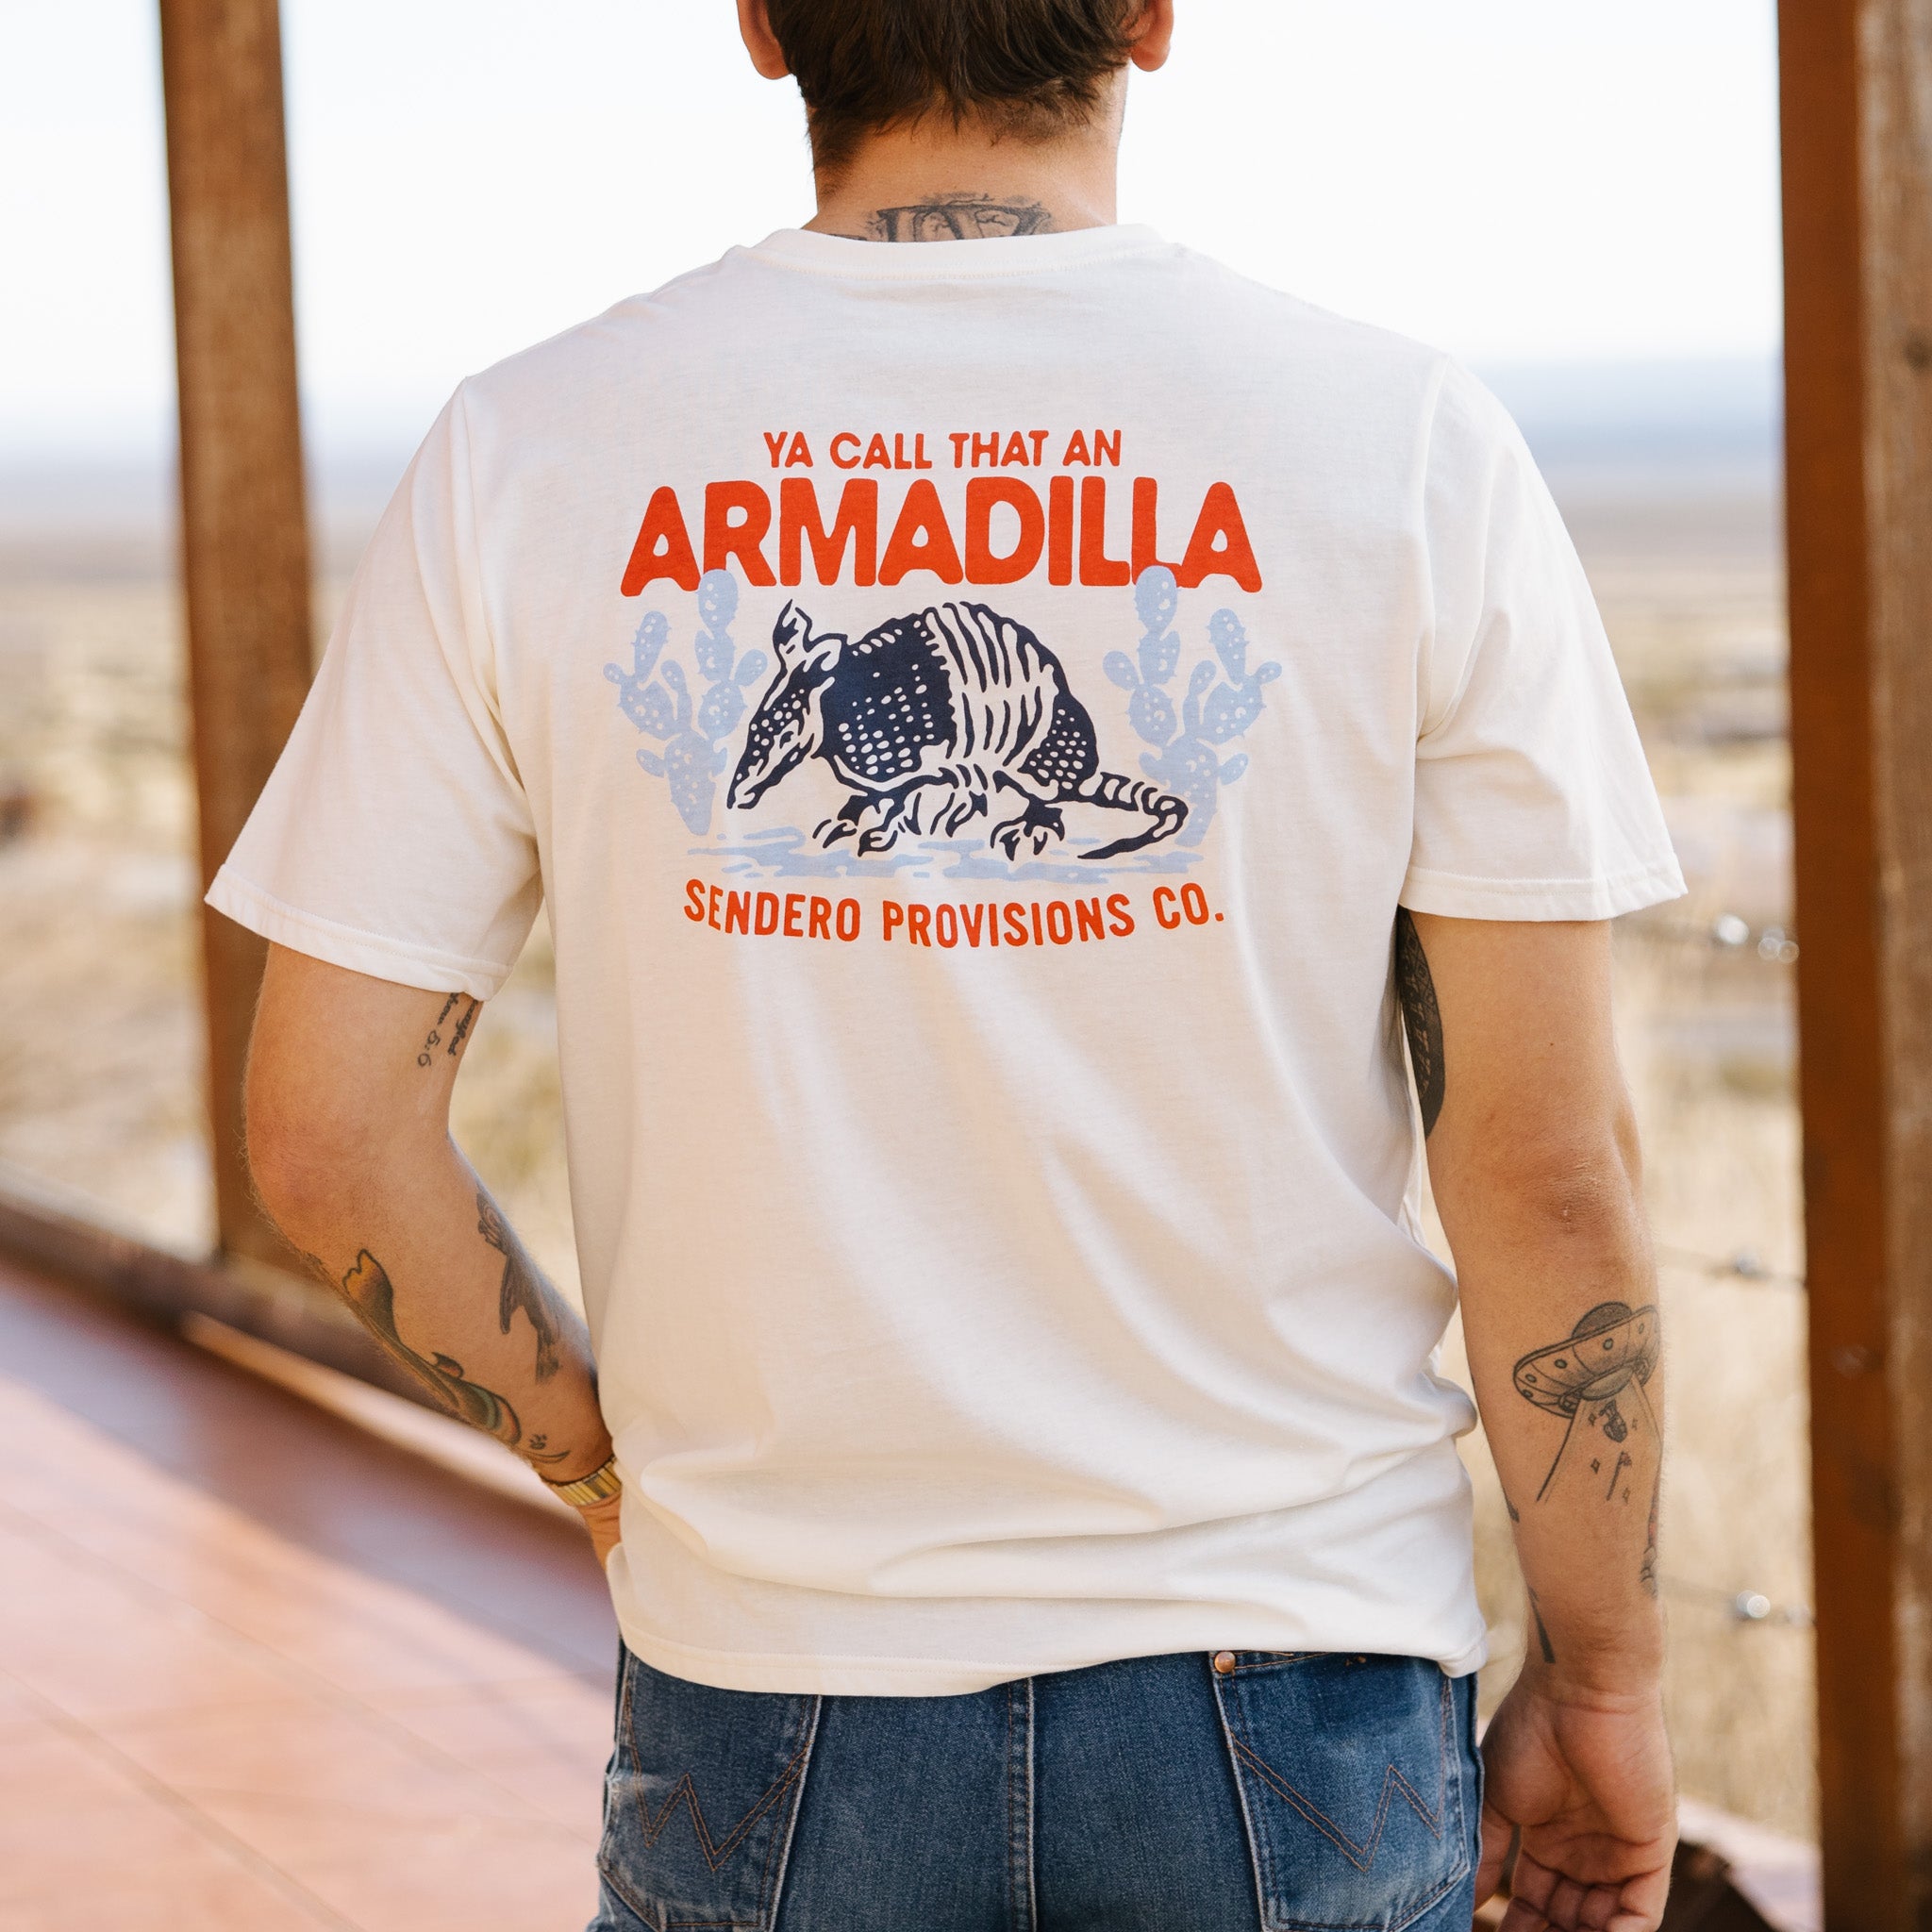 Armadilla T-Shirt